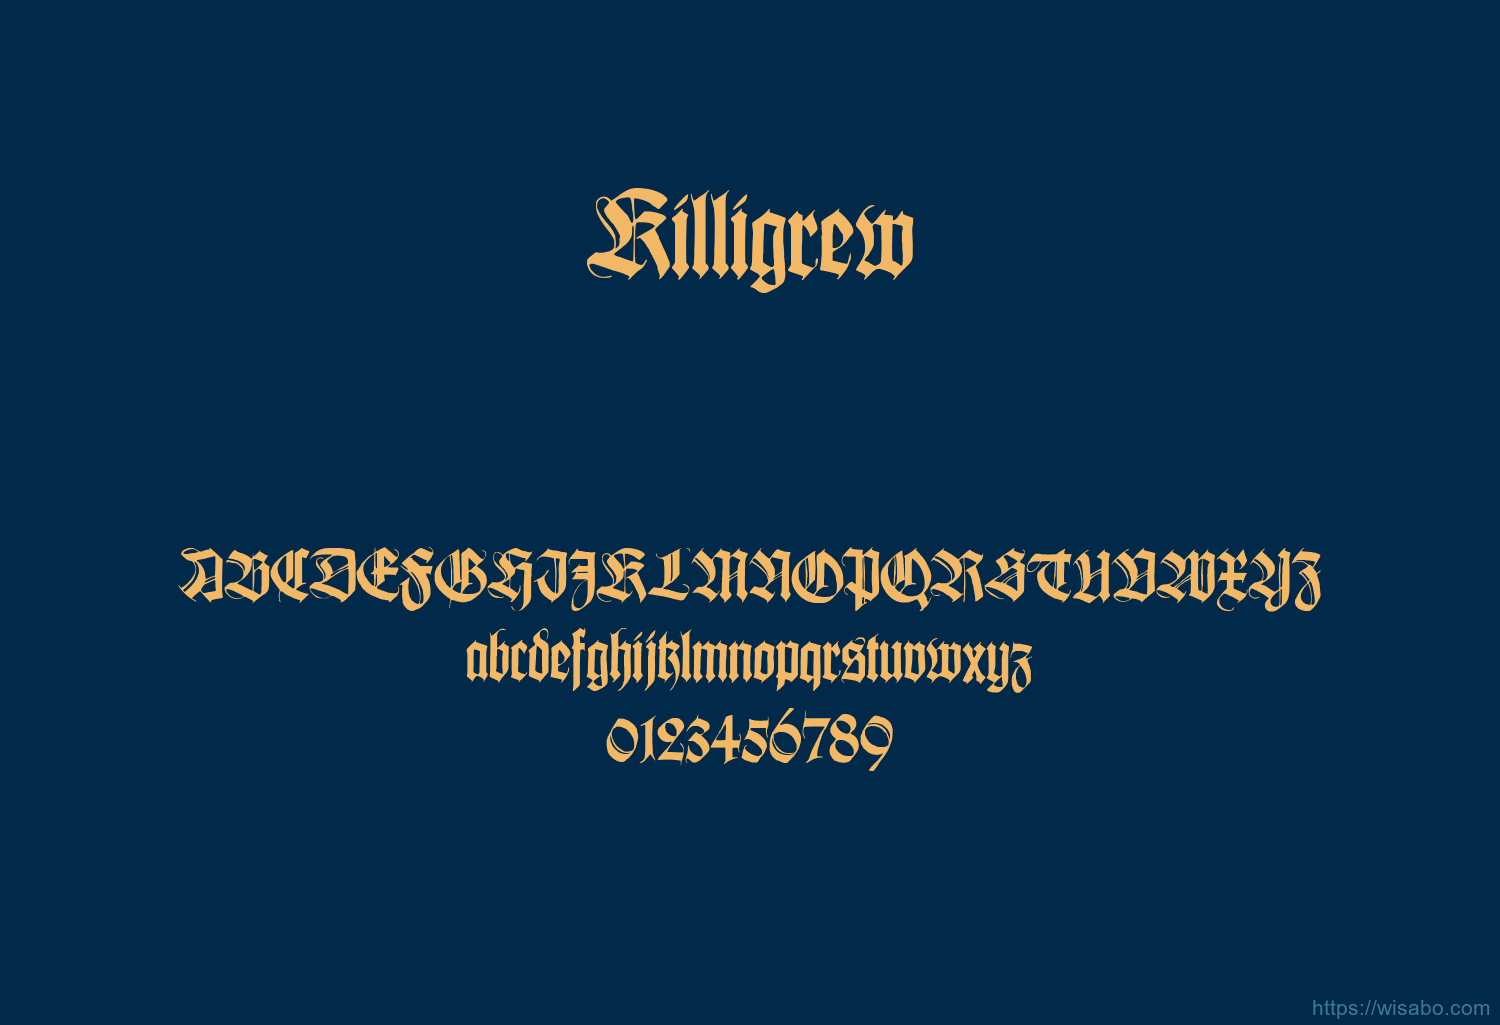 Killigrew